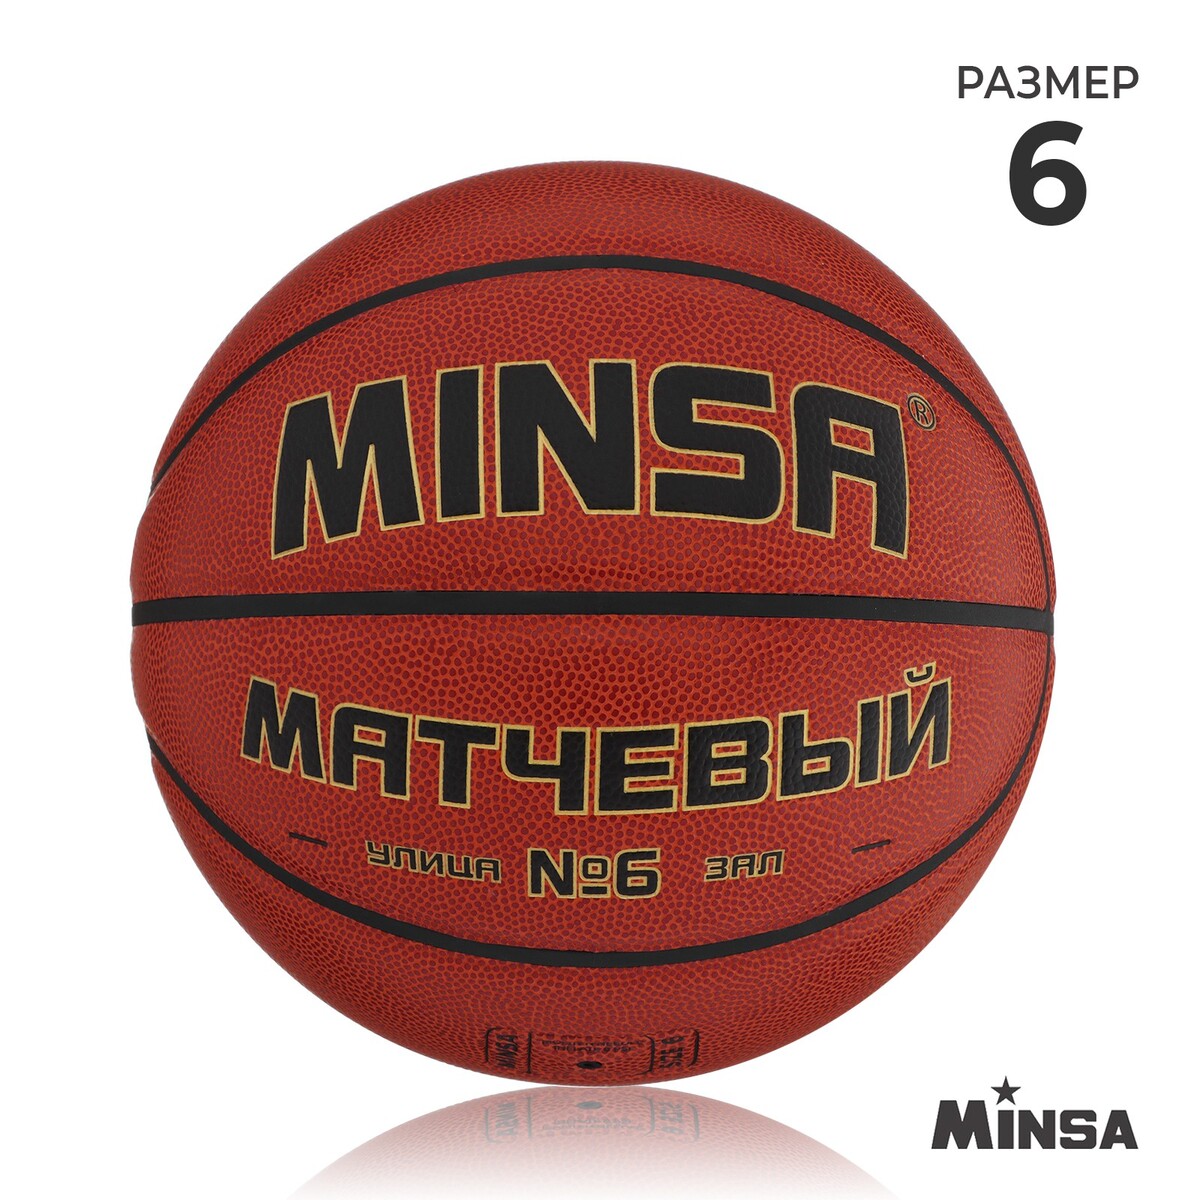 Баскетбольный мяч minsa, матчевый, microfiber pu, клееный, 8 панелей, р. 6 мяч баскетбольный minsa sport пвх клееный 8 панелей р 5